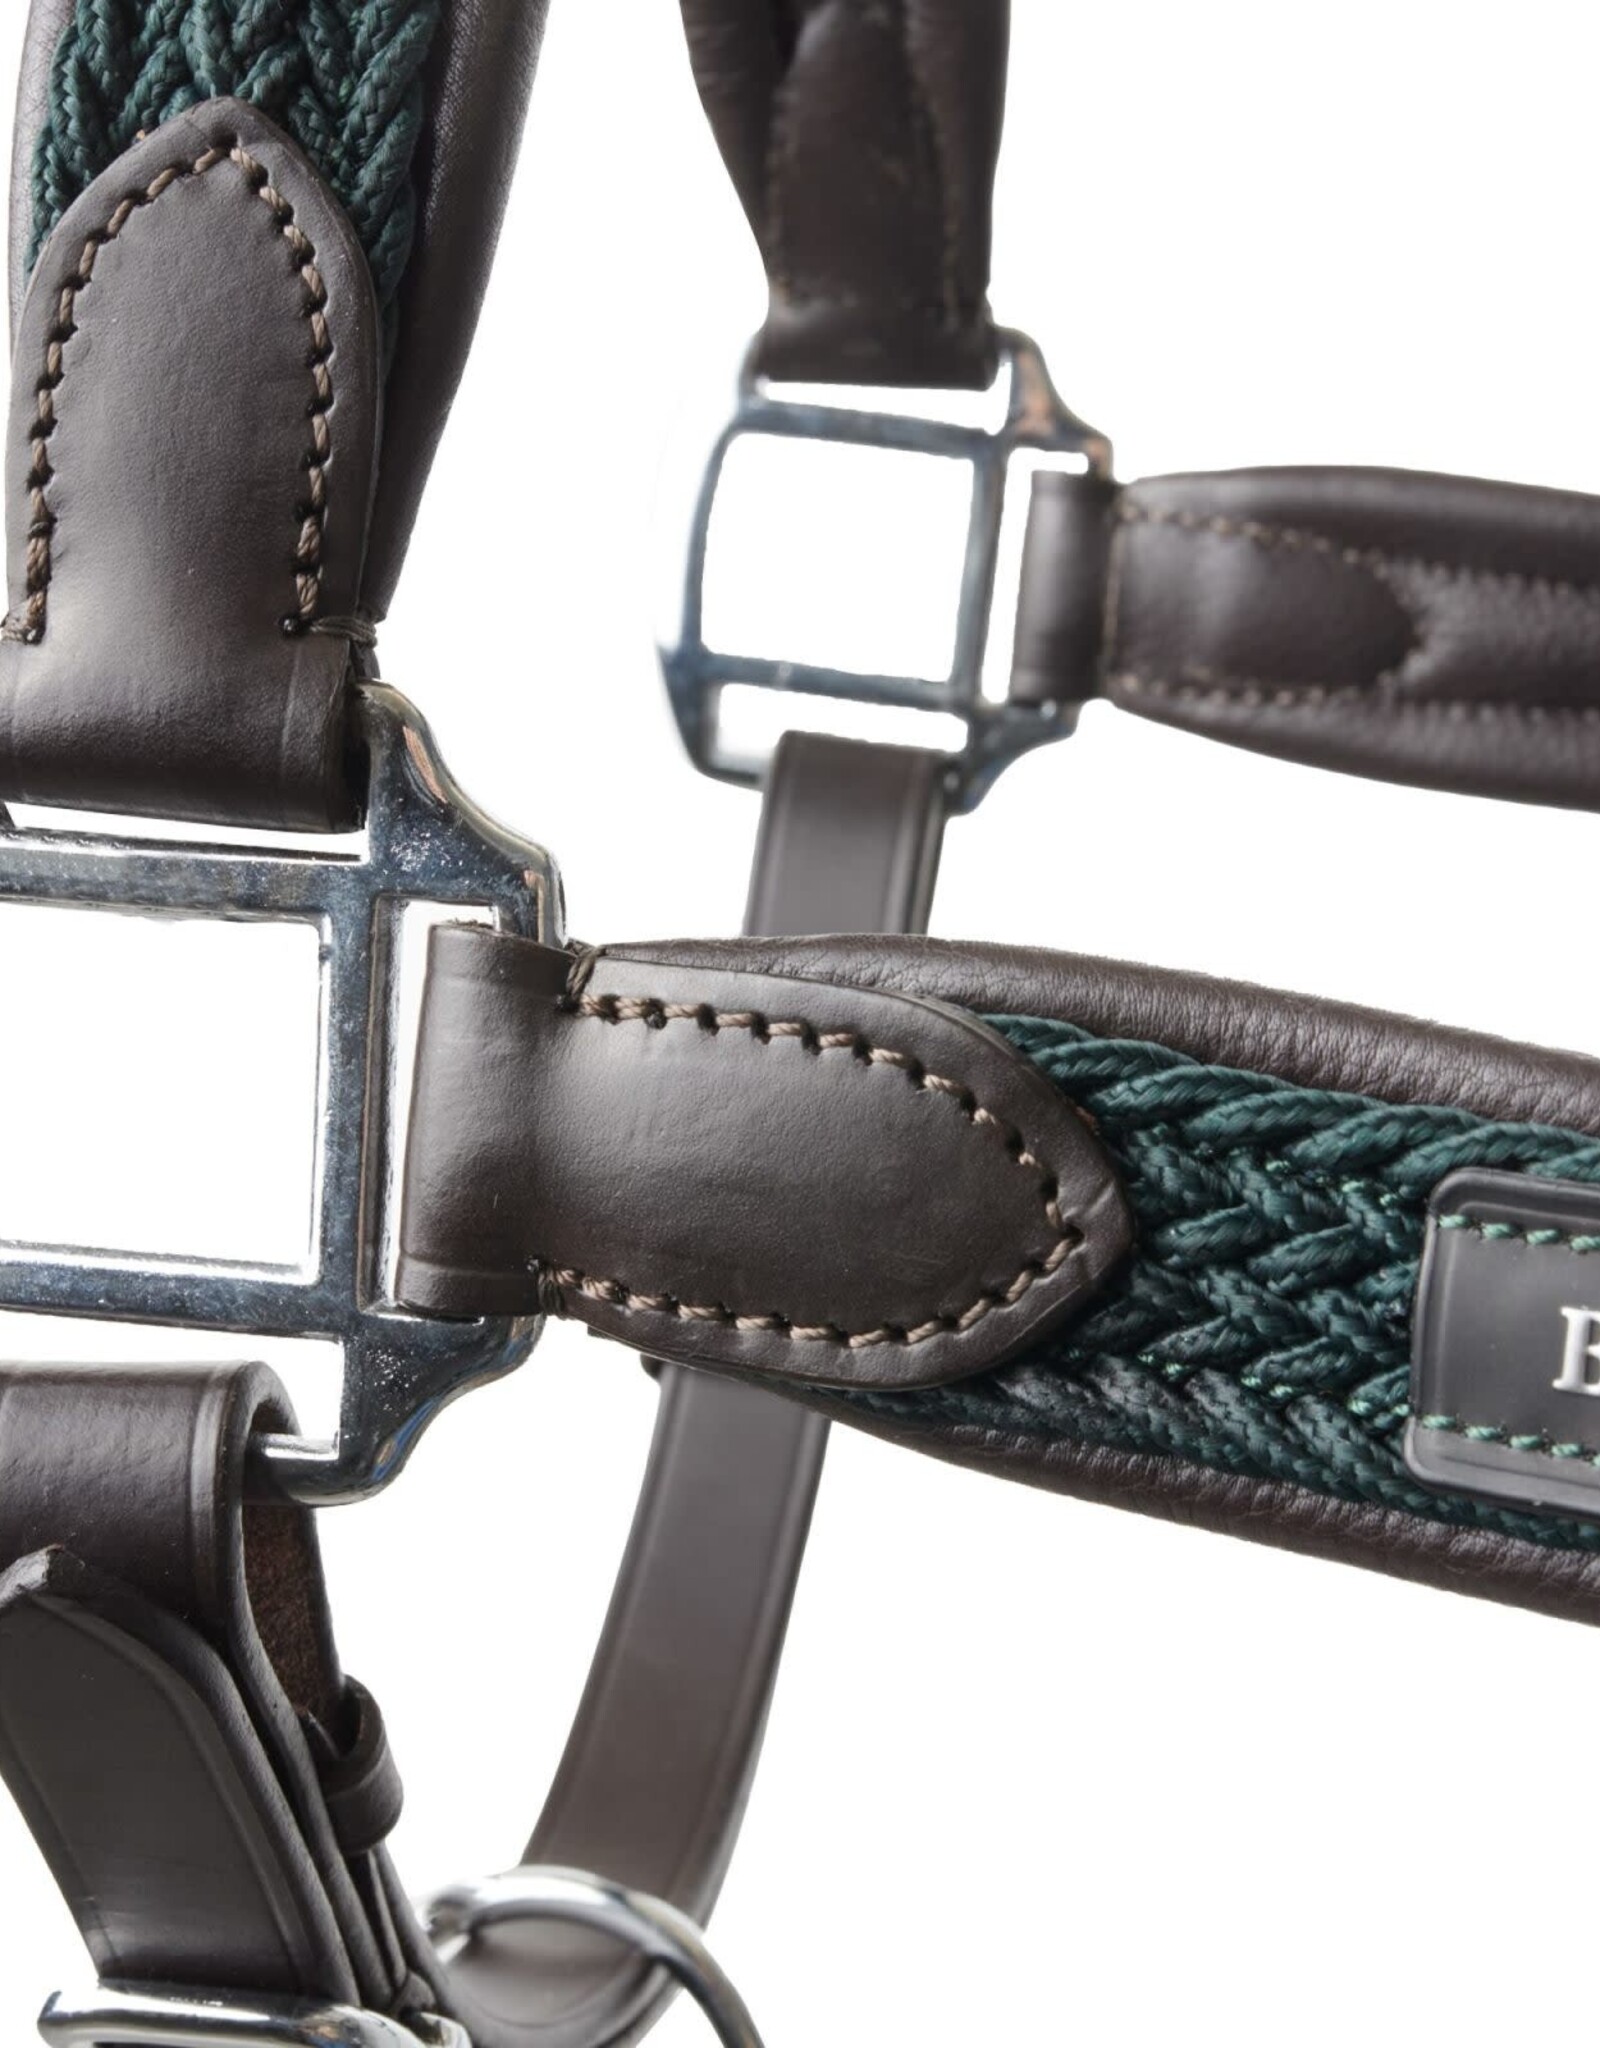 B VERTIGO Evolve Leather Halter with Braided Accents